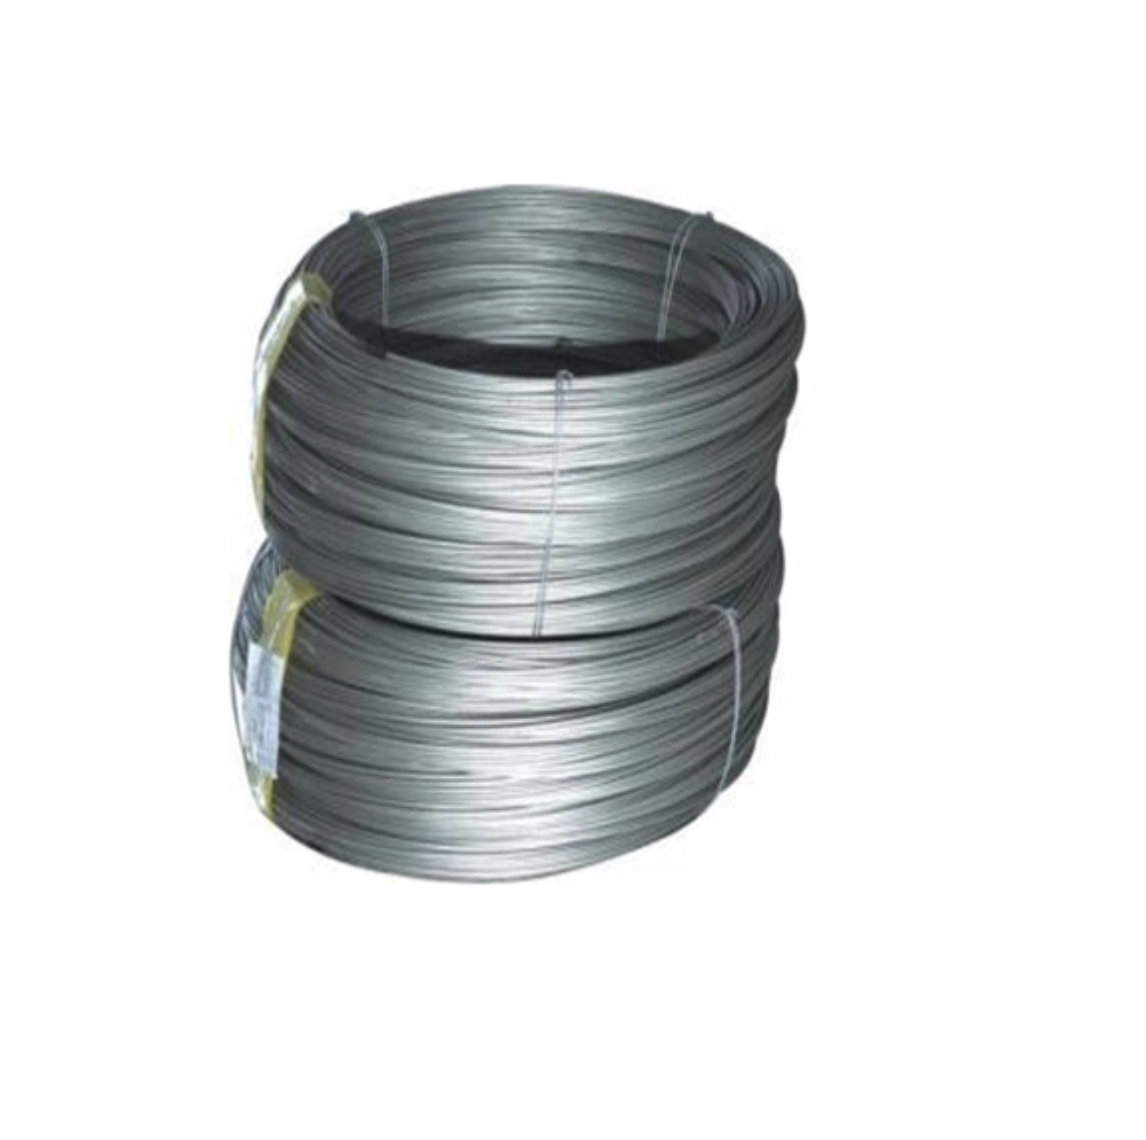 More AL Material-Aluminum wire